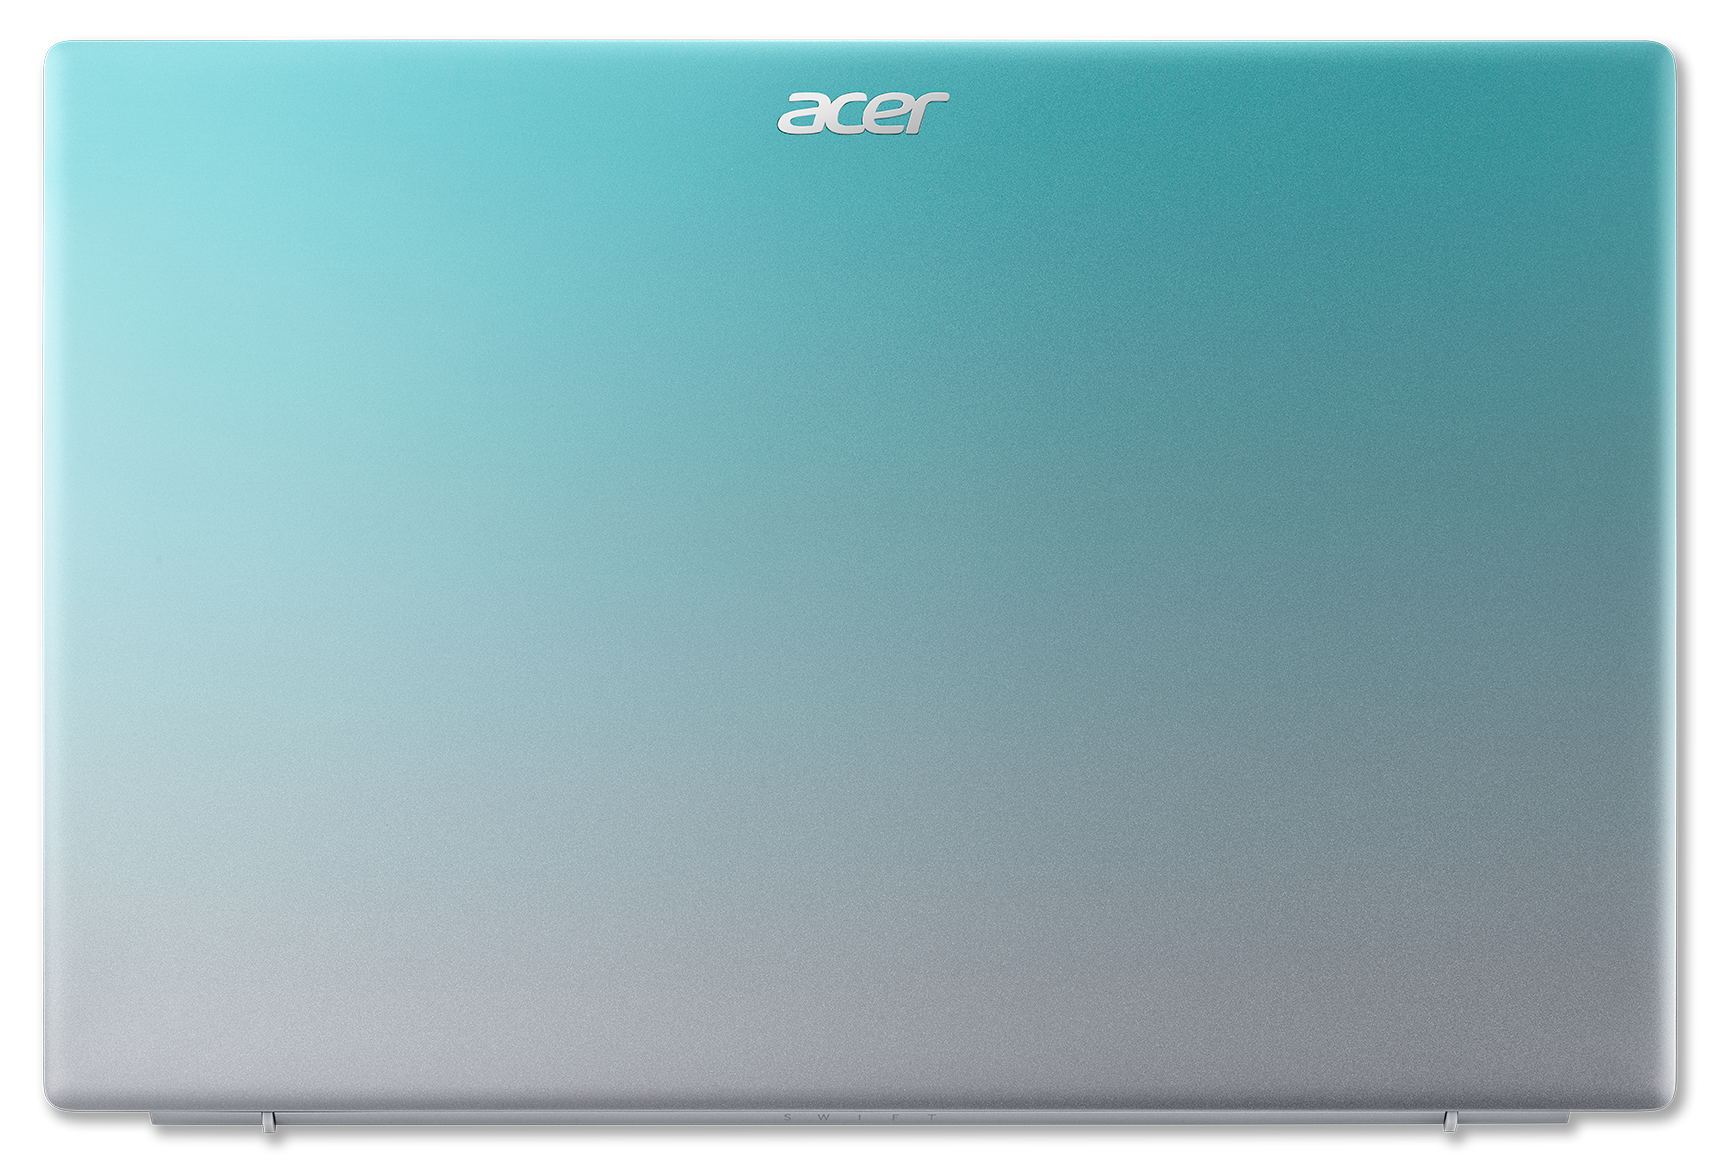 Acer vừa bổ sung thêm màu Gradient Blue cho dòng sản phẩm này